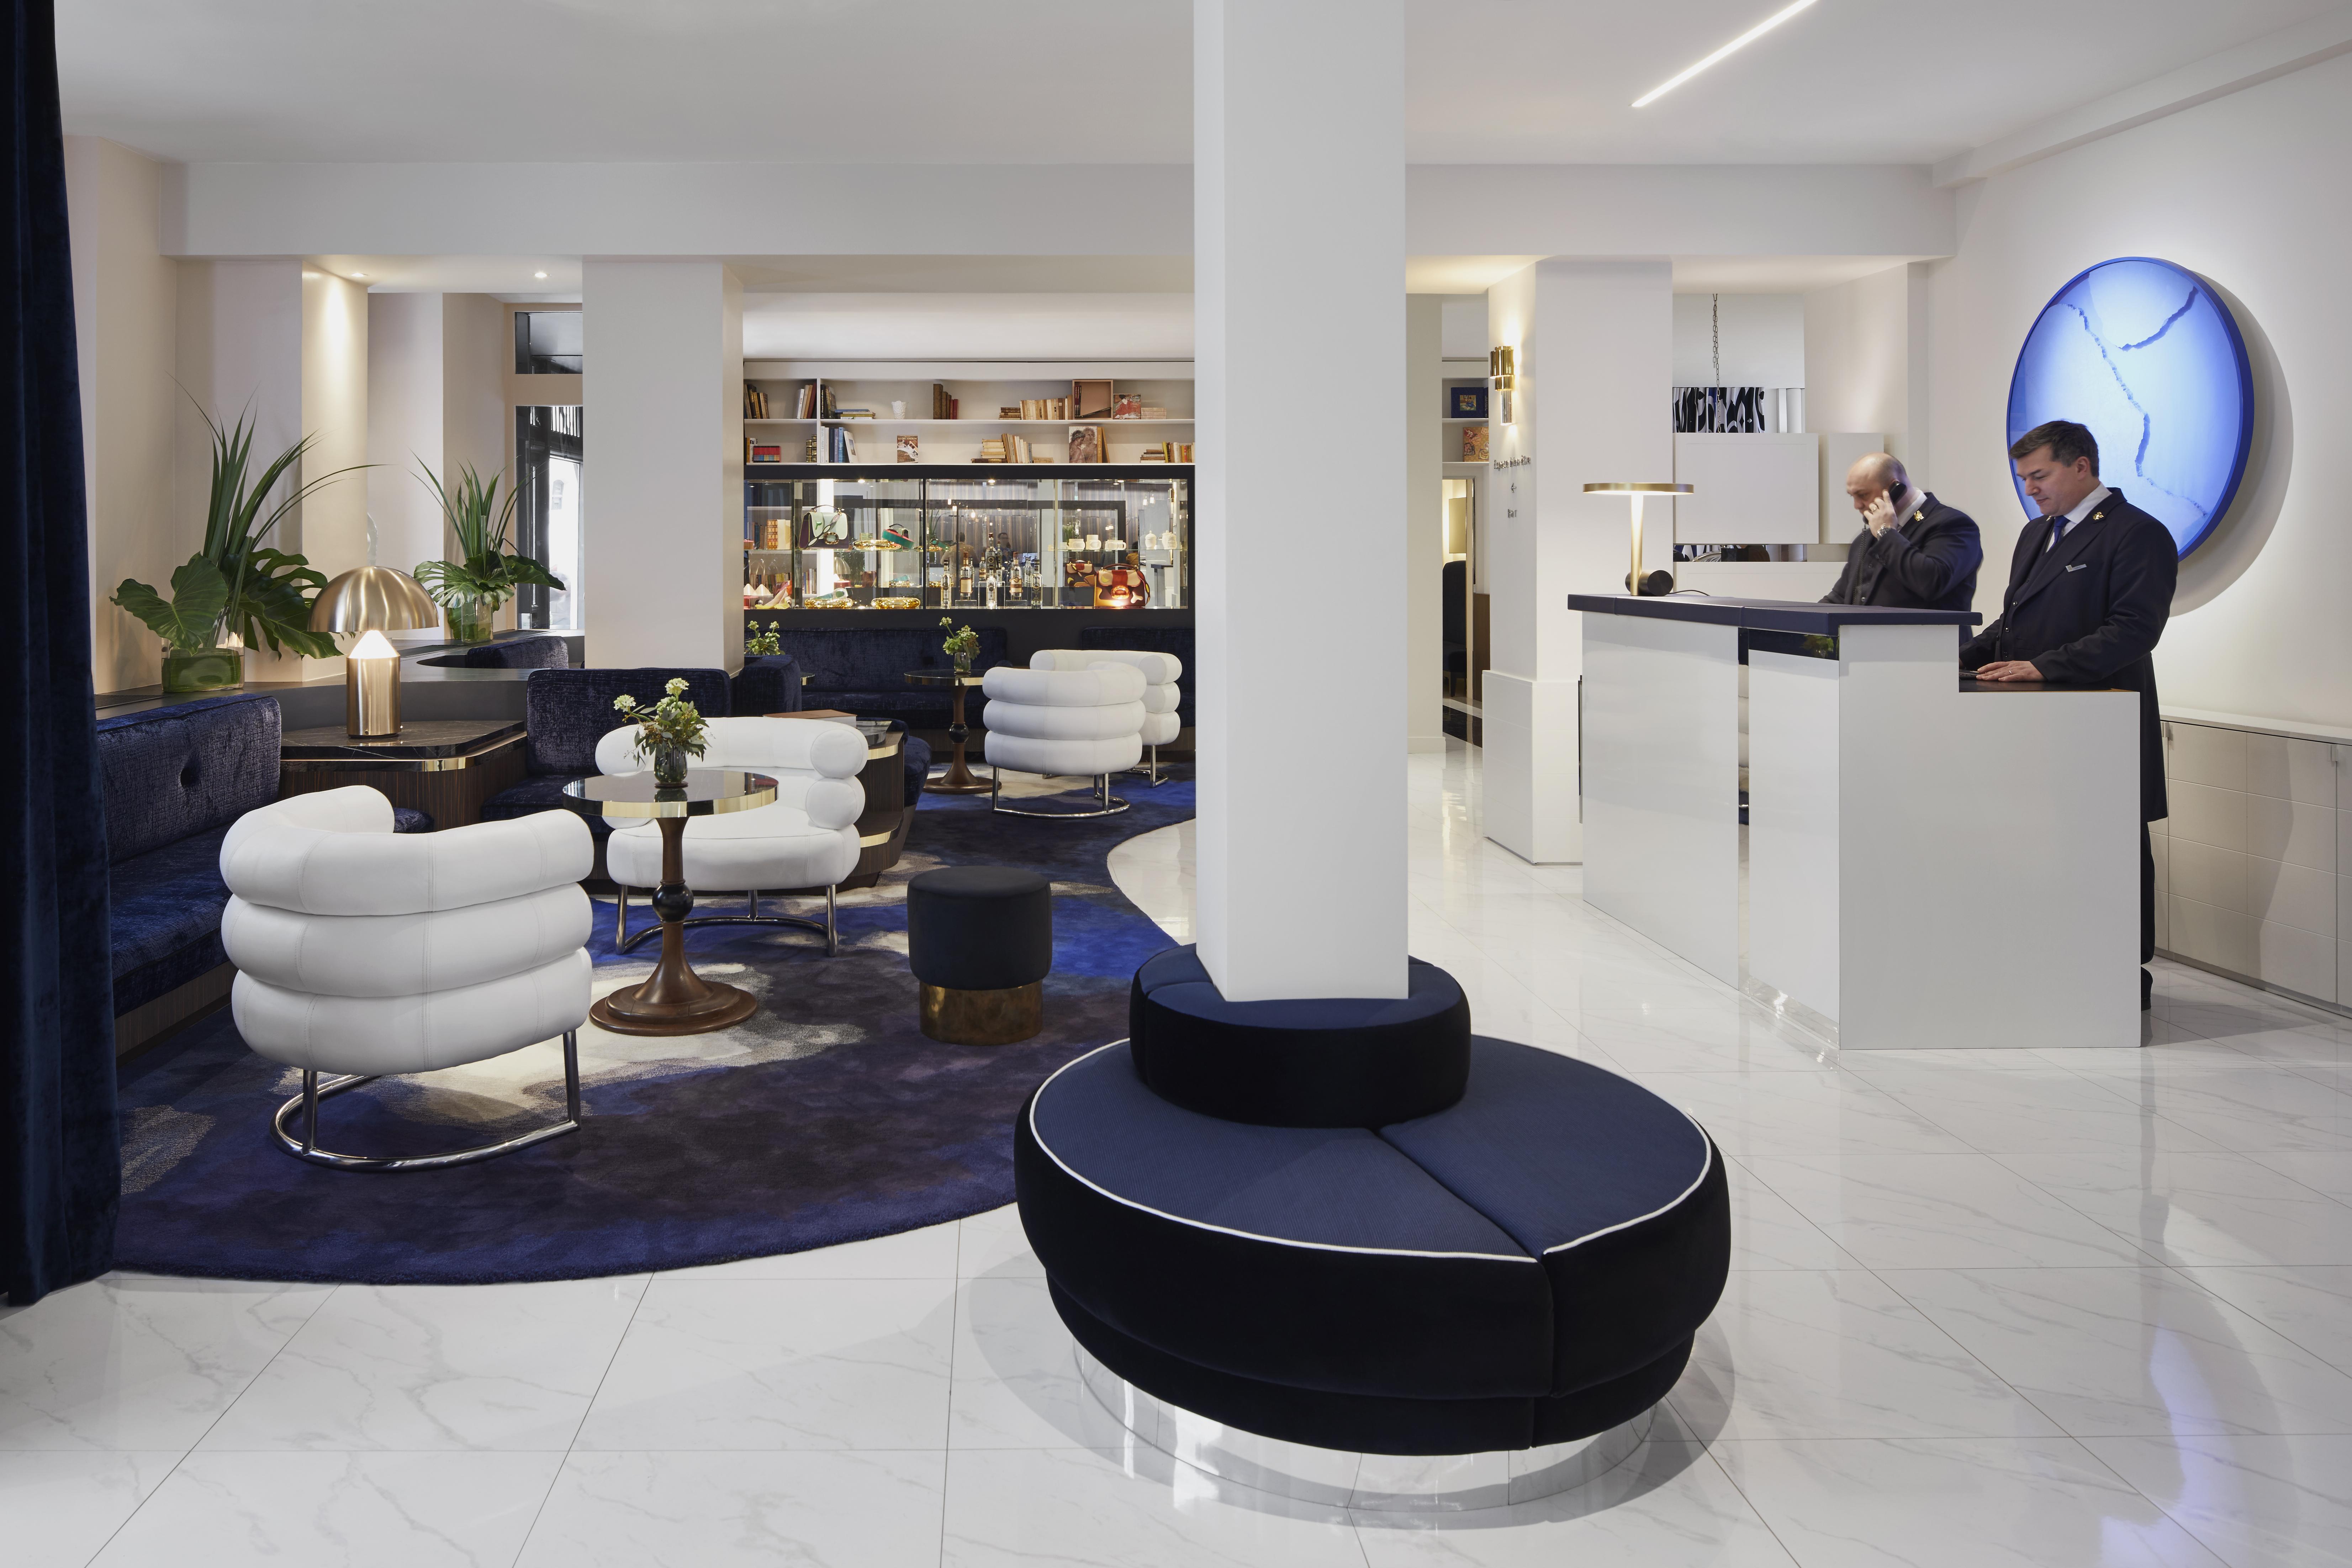 Khách sạn Paris 5*: Trải nghiệm không gian sang trọng và tiện nghi tại Hotel Bel Ami - một trong những khách sạn 5 sao nổi tiếng tại Paris. Hãy khám phá những hình ảnh đẹp lung linh của khách sạn này để lên kế hoạch cho chuyến du lịch sắp tới của bạn.